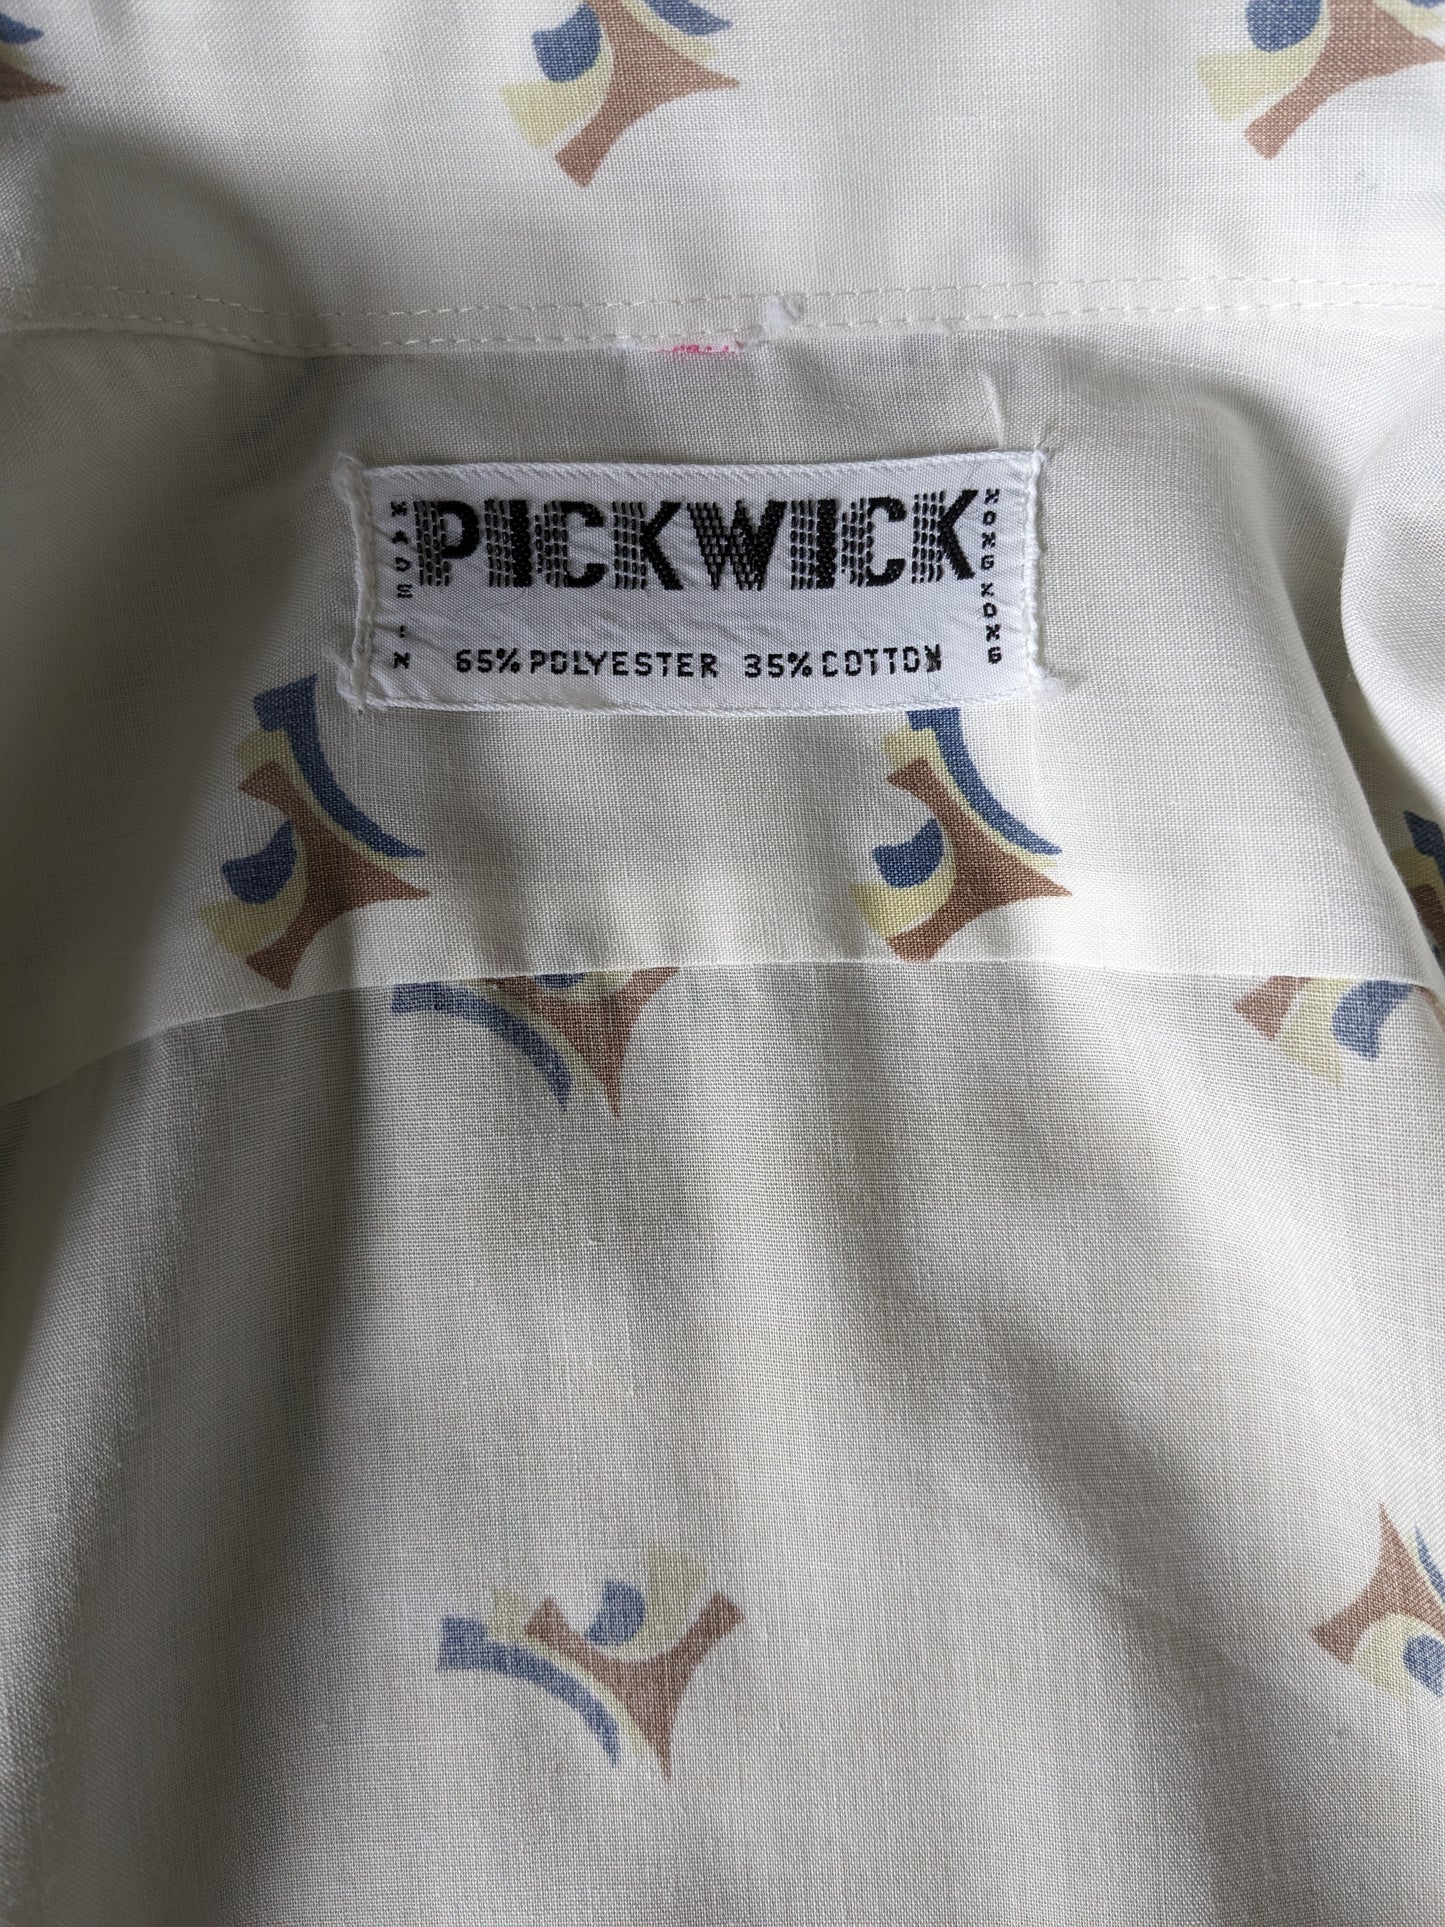 Shirt de Pickwick des années 70 vintage avec collier. Impression en bleu marron blanc. Taille 2xl / xxl.